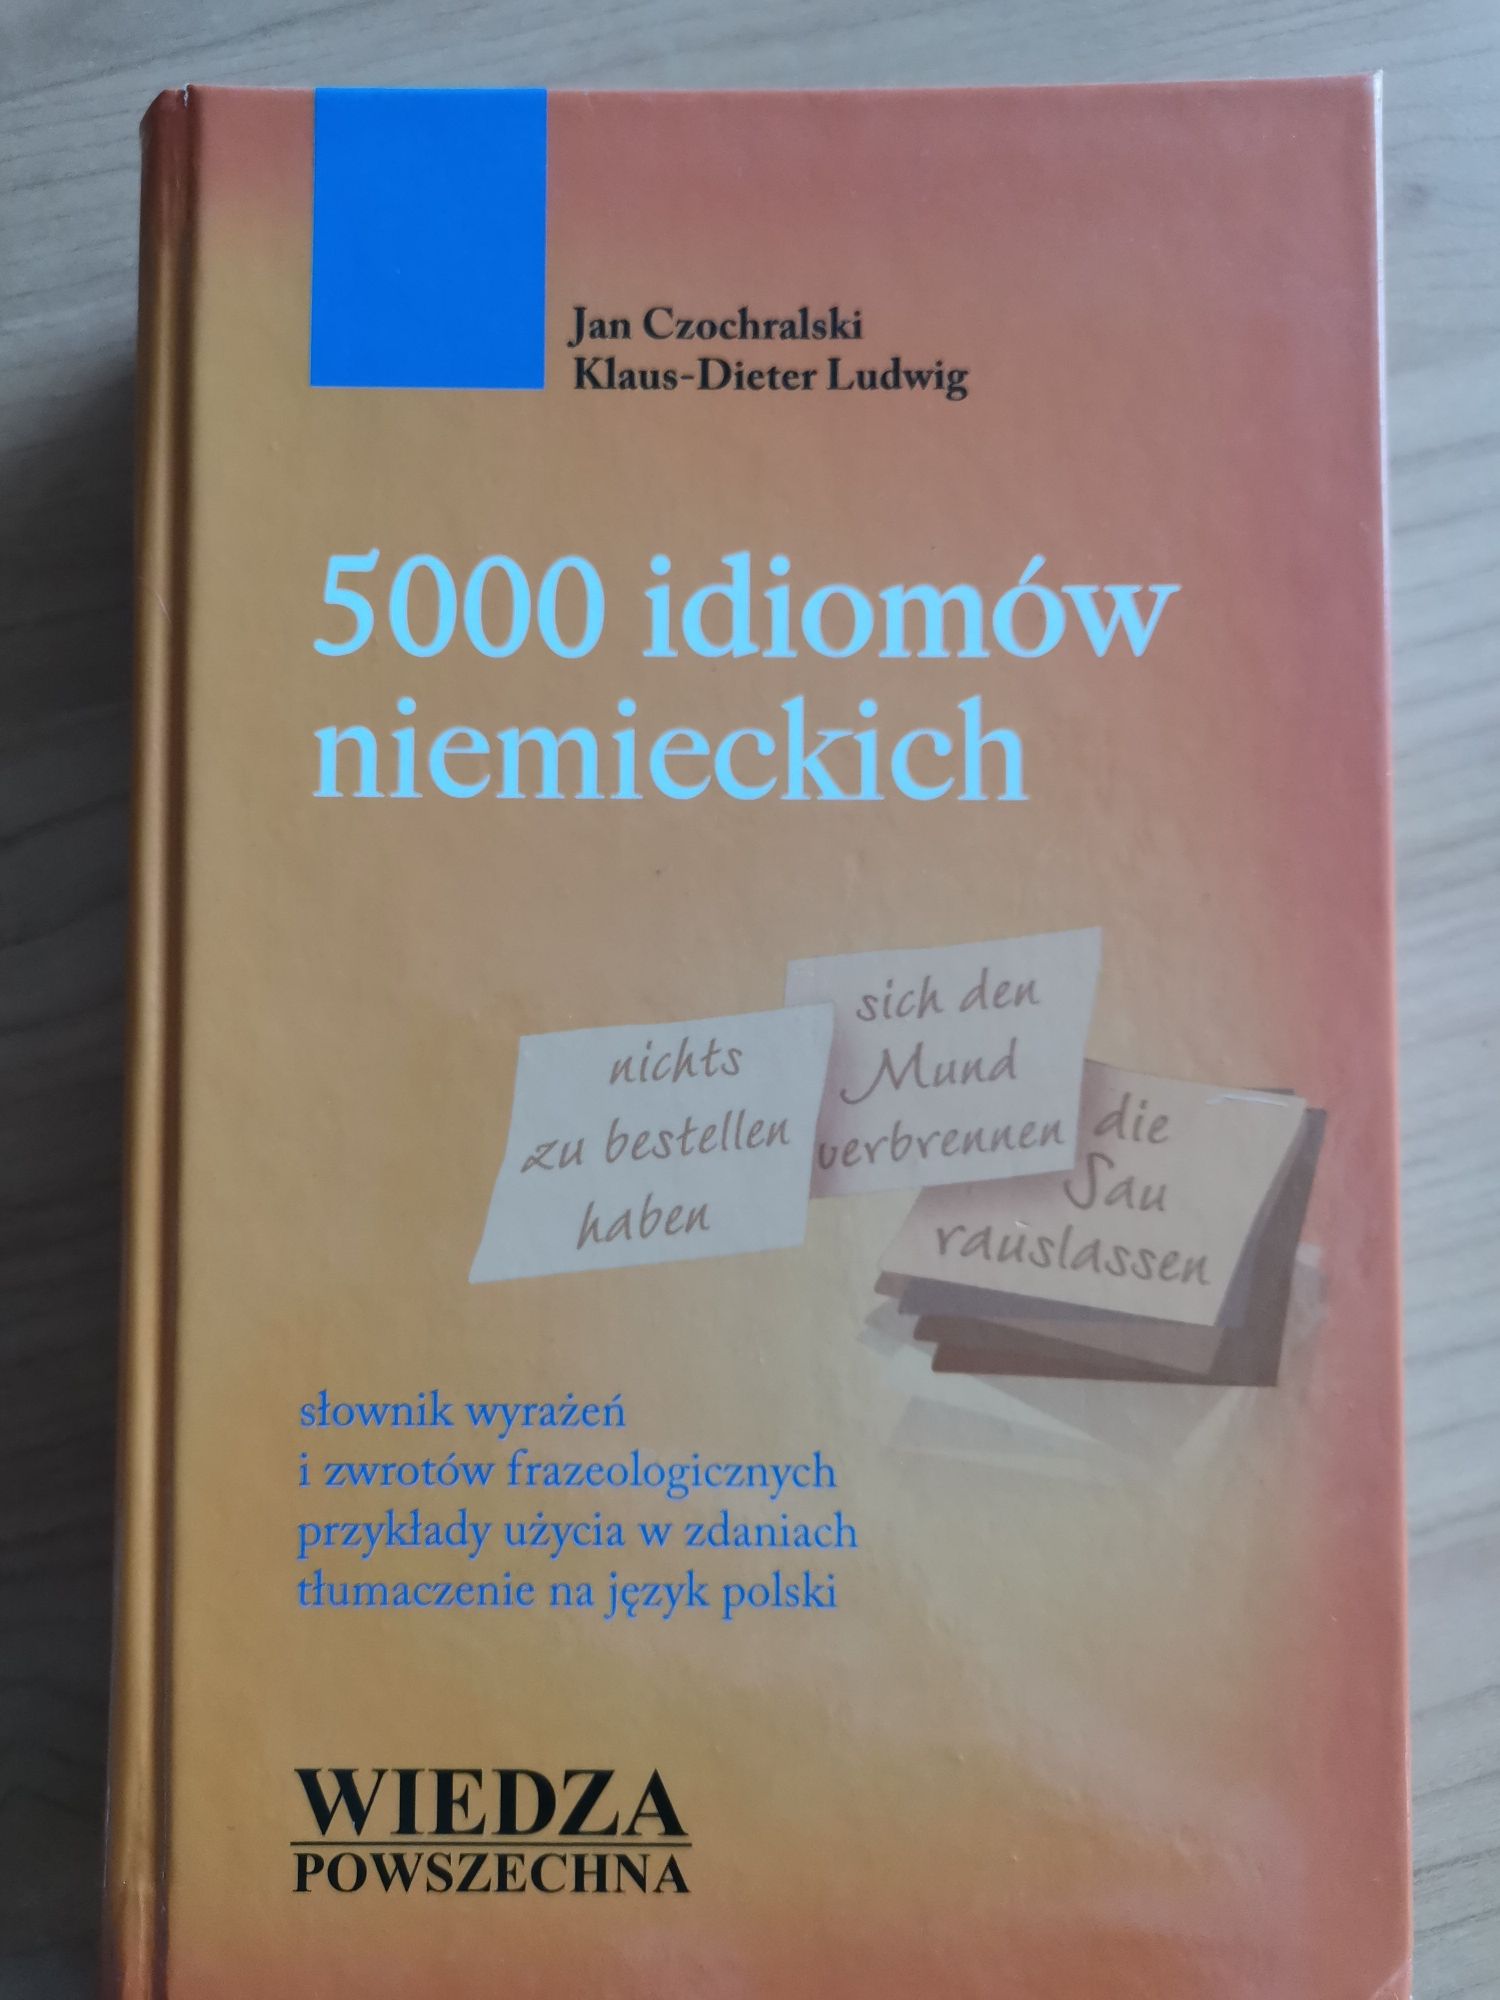 5000 idiomów niemieckich. Jan Czochralski